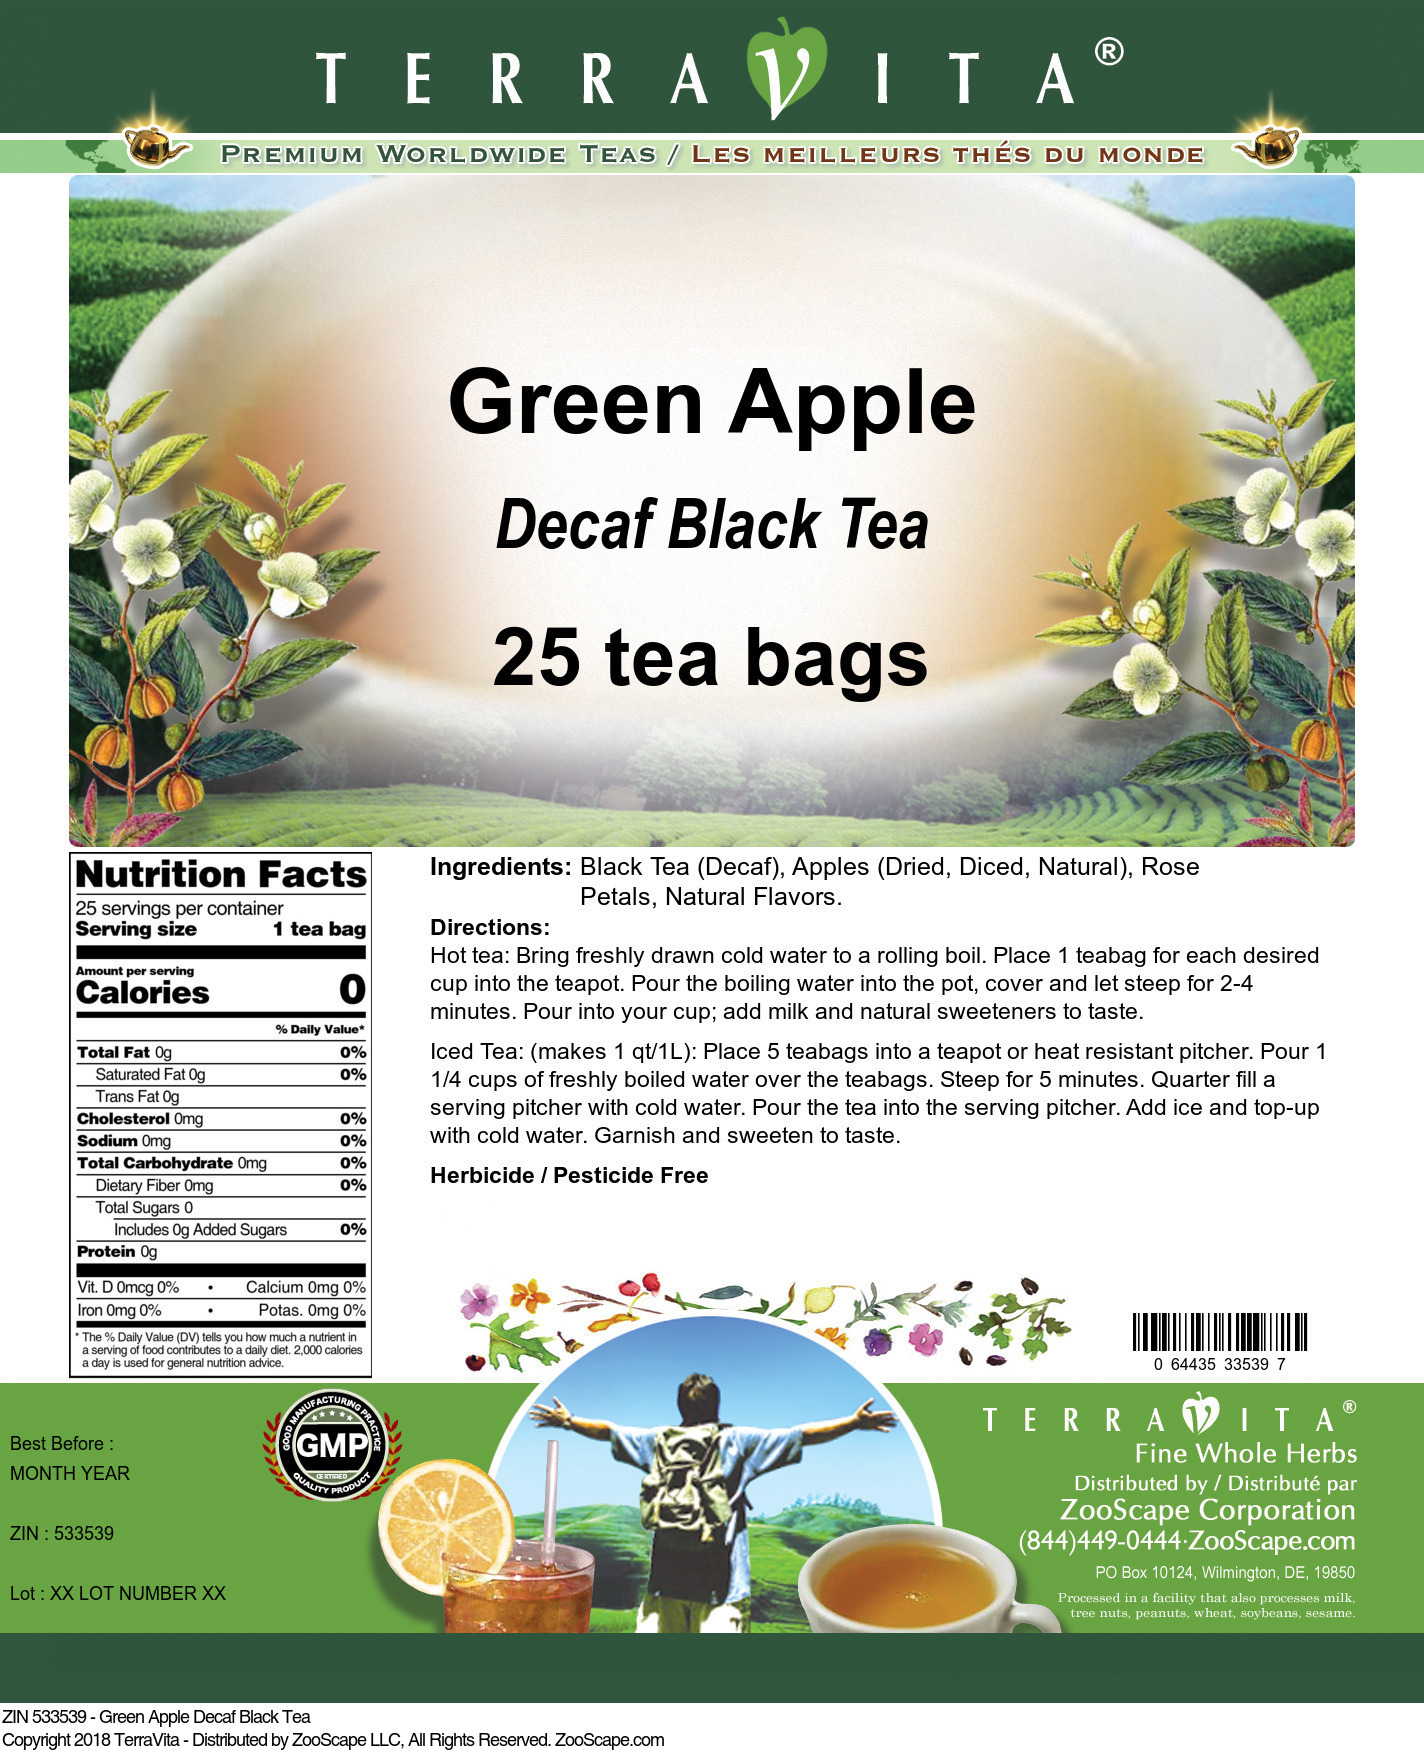 Green Apple Decaf Black Tea - Label